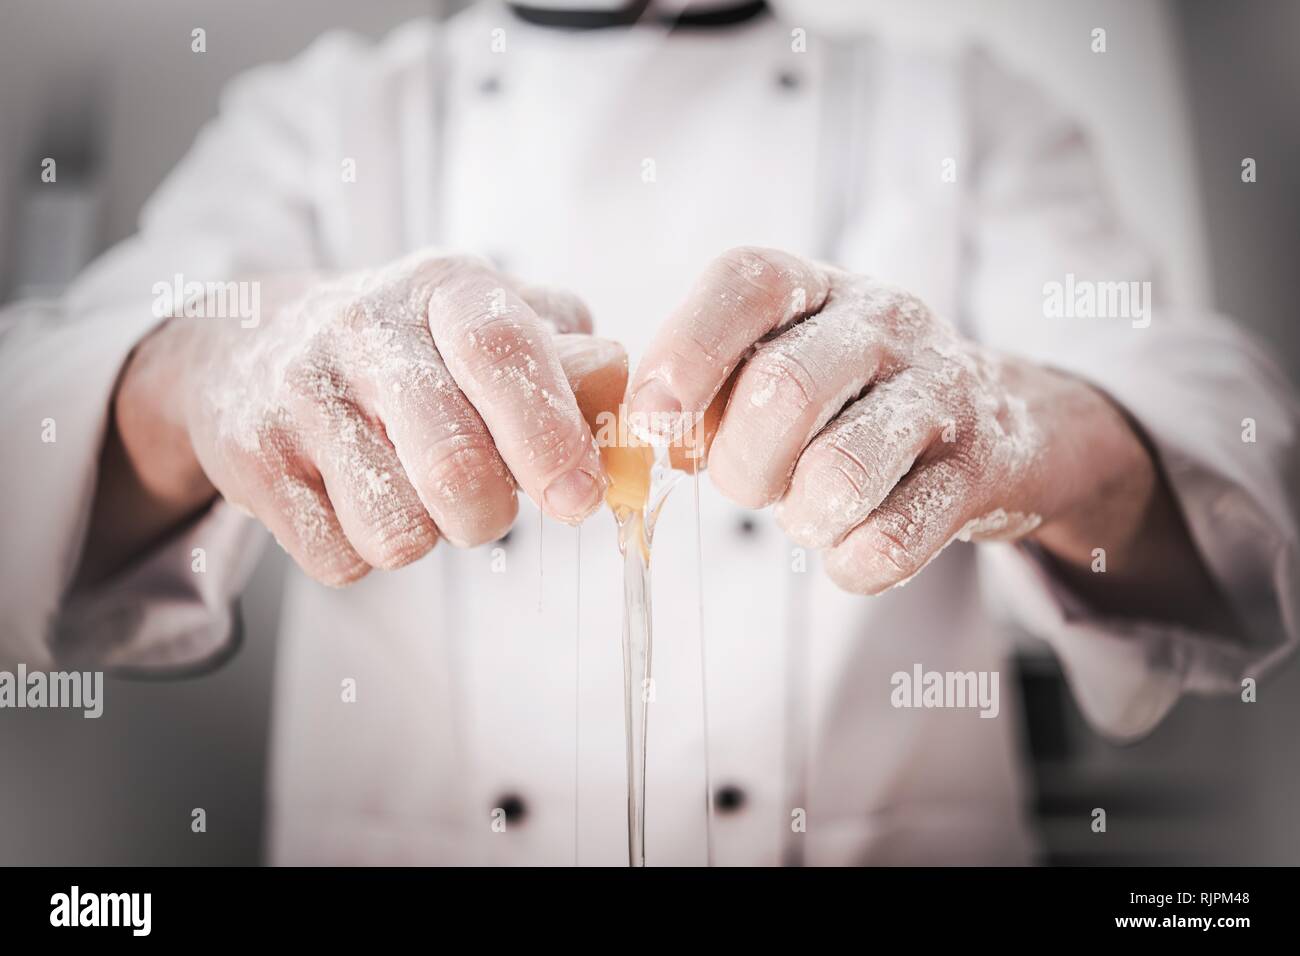 Cucina caucasica Chef nella sua 30s di cracking e aggiunta di uovo alla crosta di pane. Industria da pranzo. Foto Stock